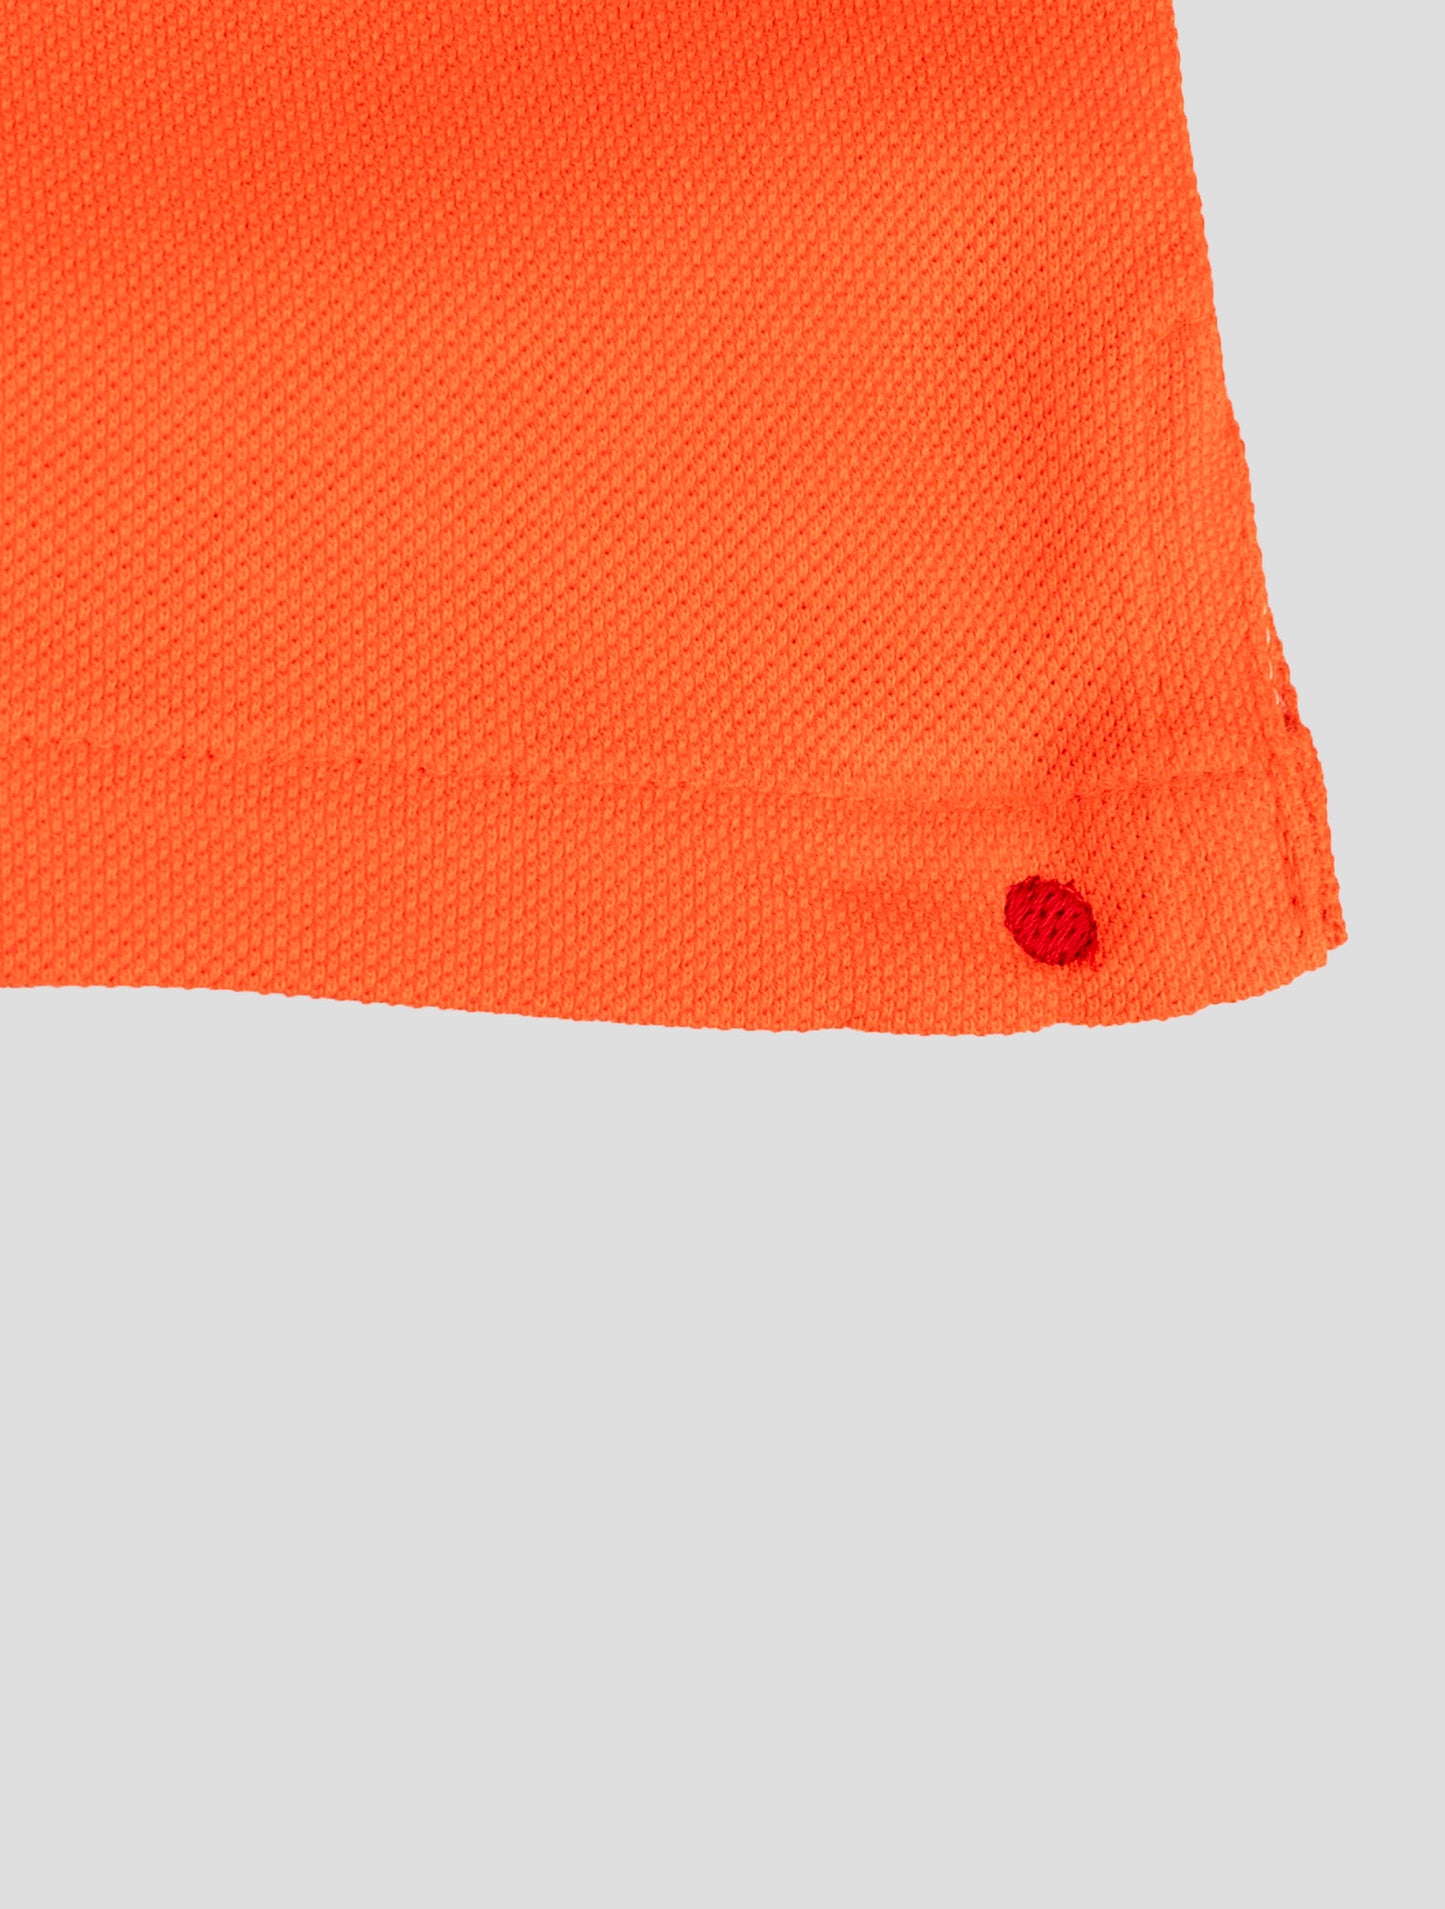 Kiton matching outfit-modré umbi a oranžové krátké kalhoty tracksuit